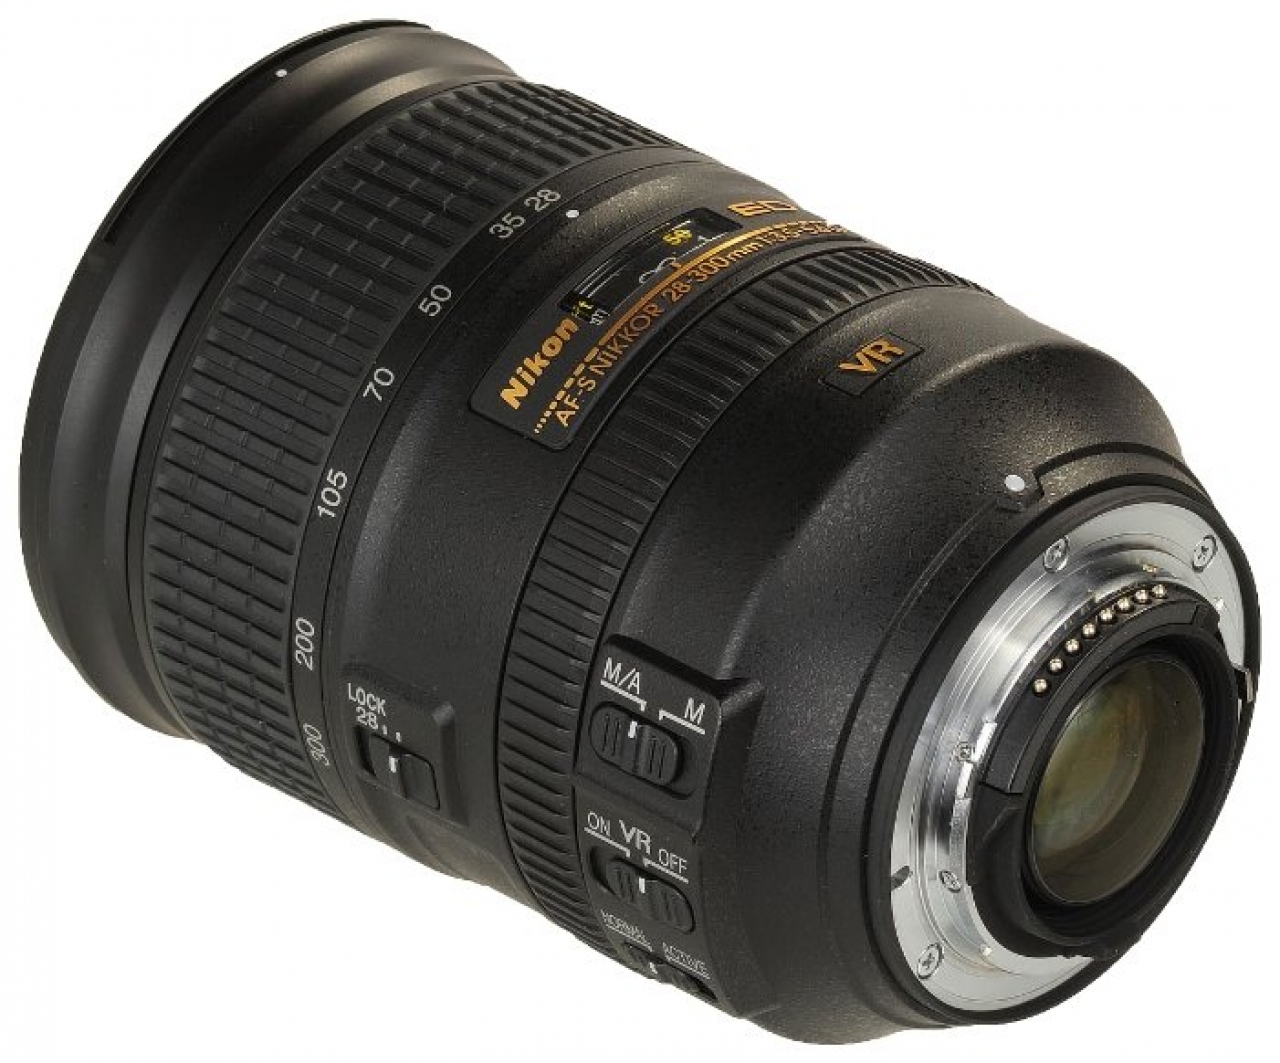 24 120mm 4g vr. Объектив Nikon 28-300mm f/3.5-5.6g ed VR af-s Nikkor. Nikon 24-120mm f/4g ed VR af-s Nikkor. Nikon 24-120 f4. Nikon 24-120mm f/4.